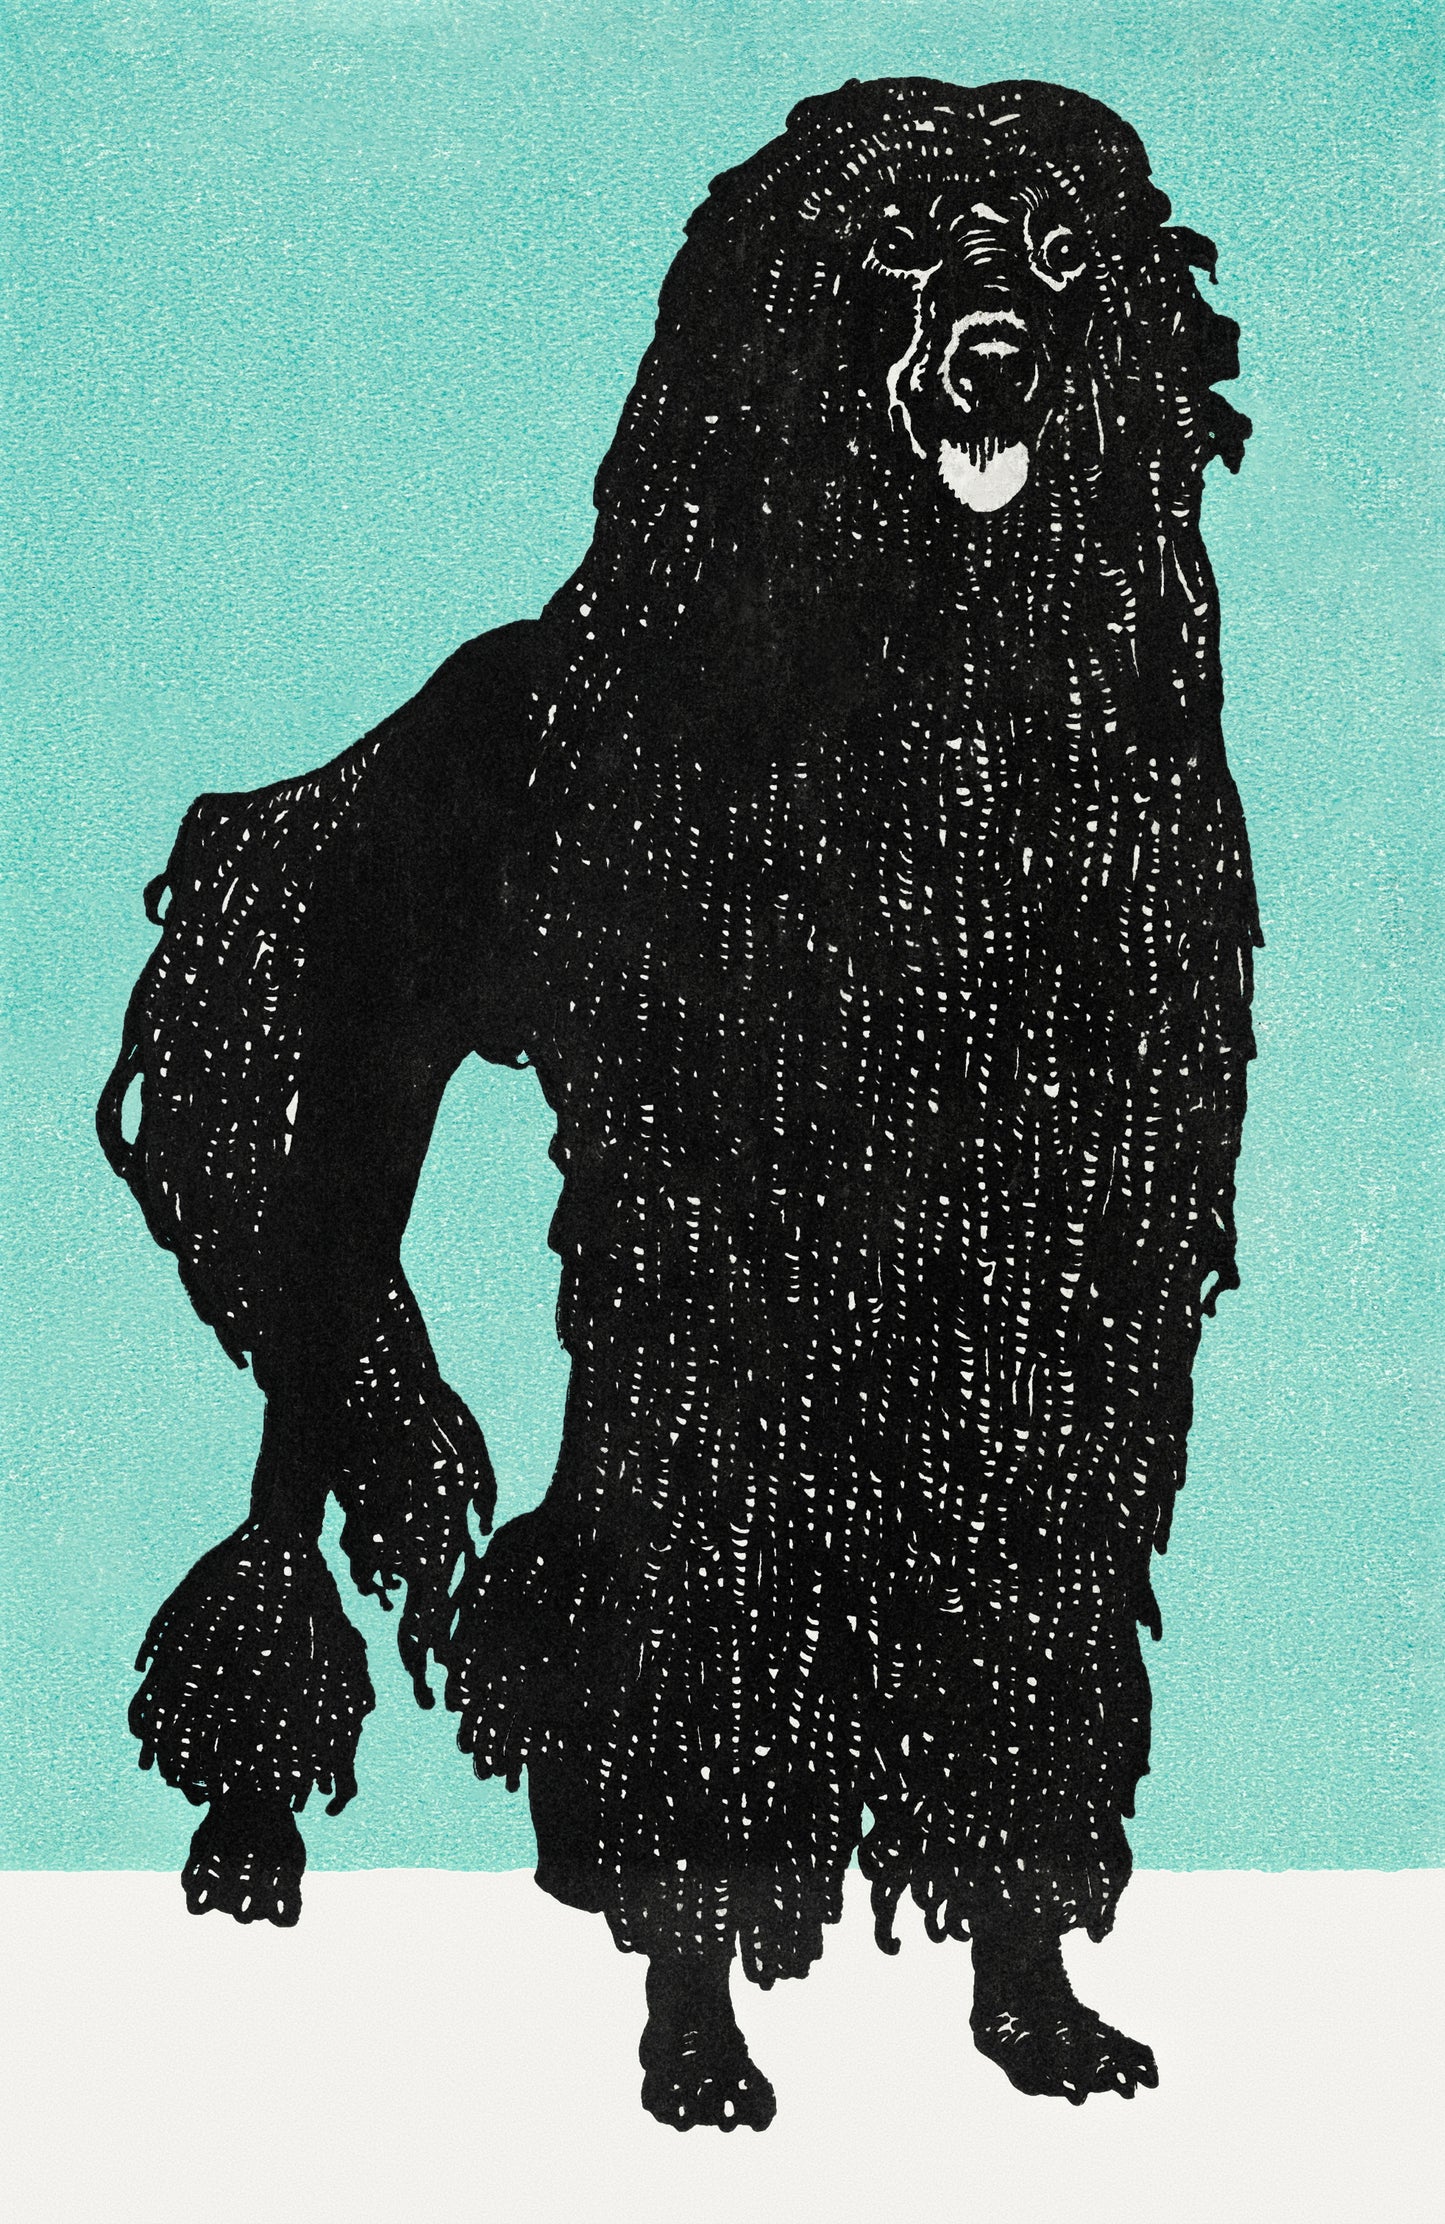 Poodle by Moriz Jung - Poodle Pop Art Print